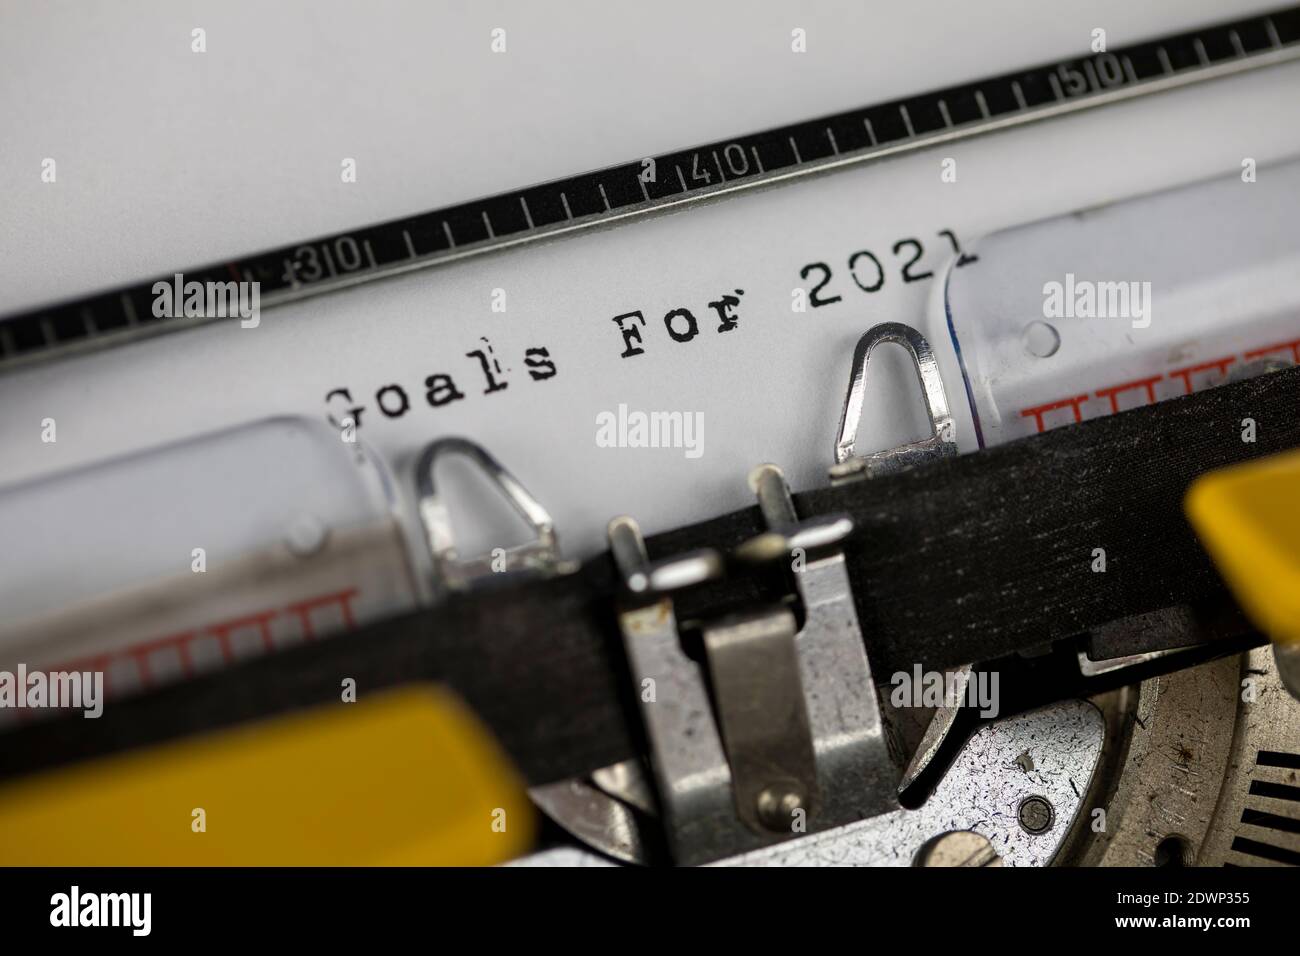 2021 objectifs écrits sur une vieille machine à écrire Banque D'Images